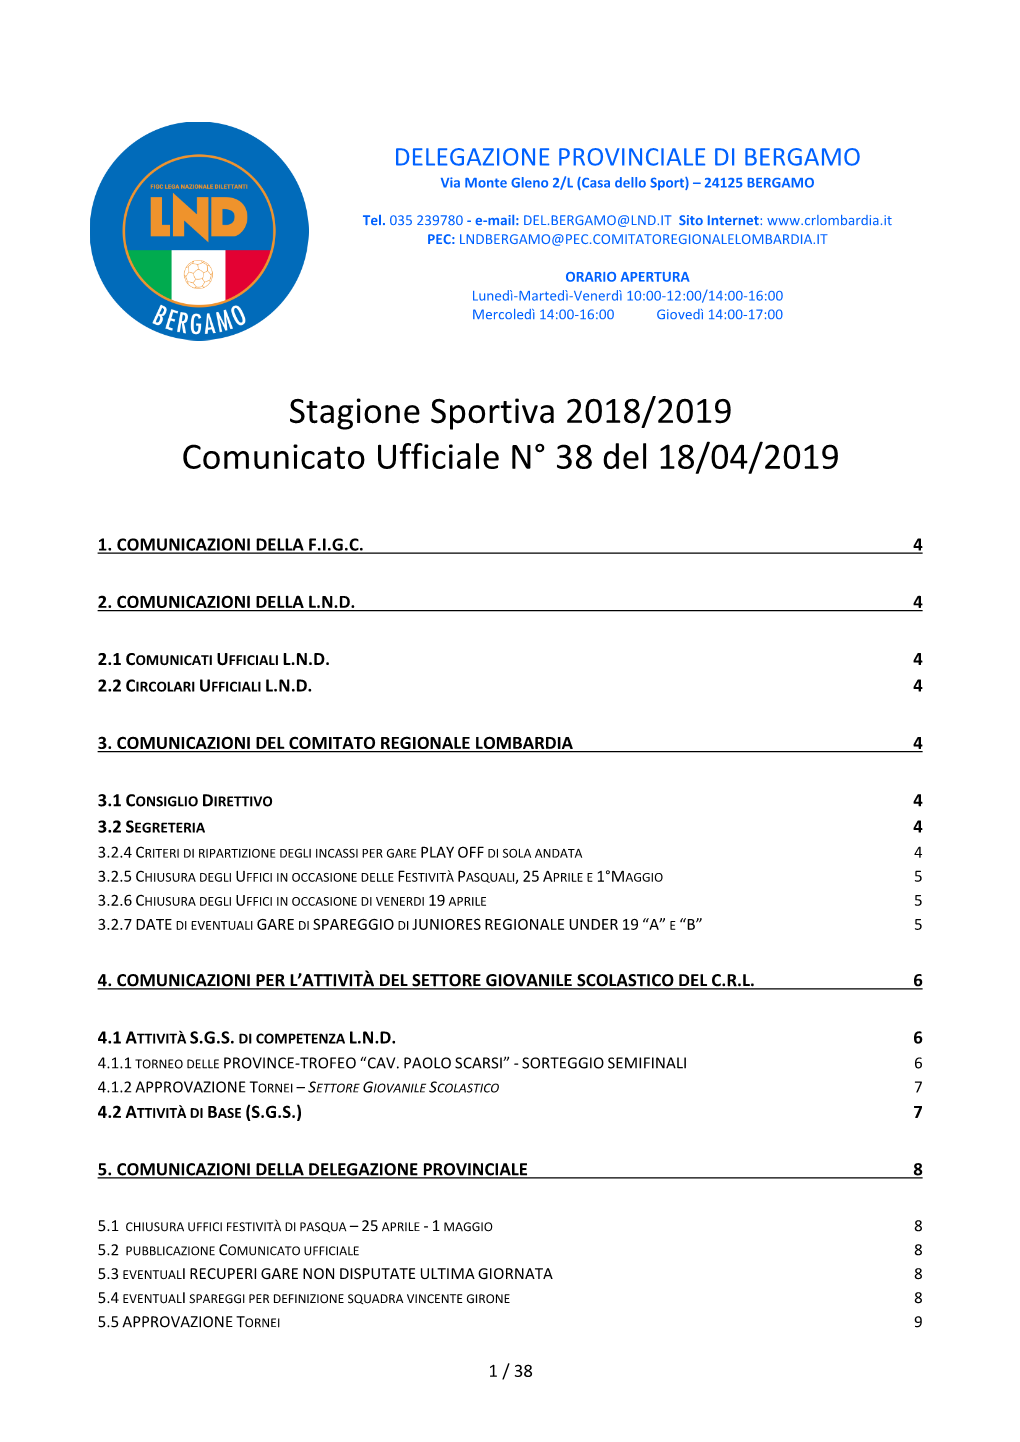 Stagione Sportiva 2018/2019 Comunicato Ufficiale N° 38 Del 18/04/2019